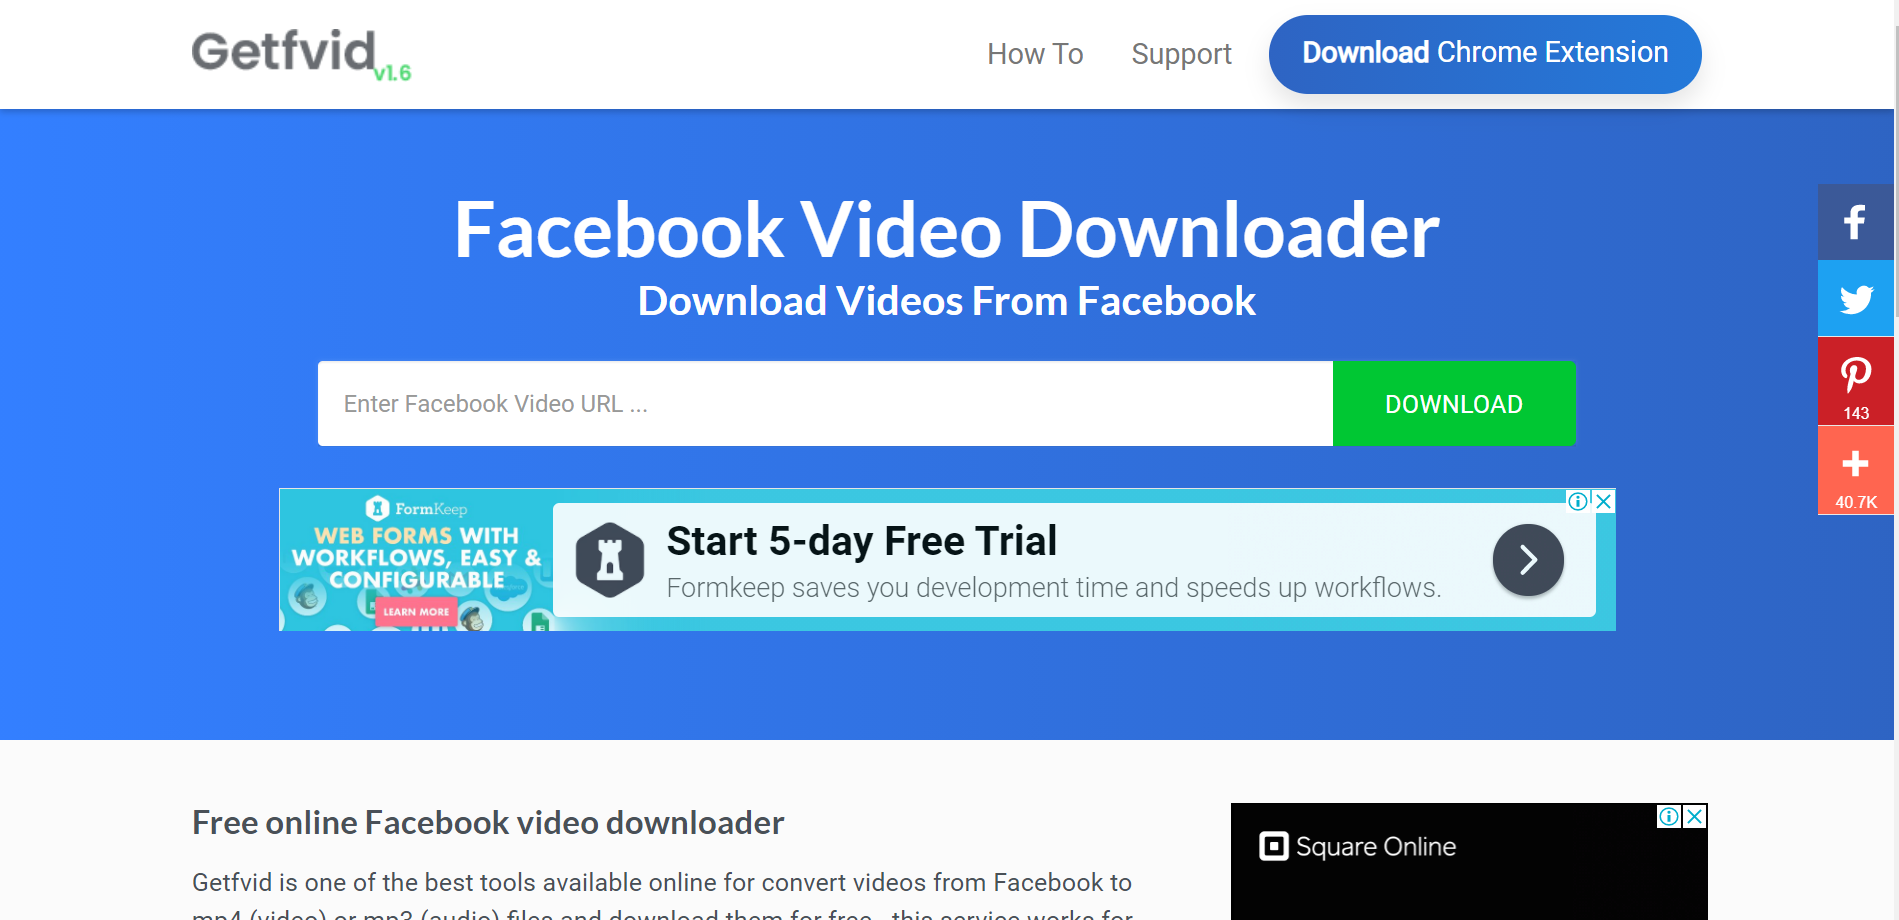 downloading Facebook Video Downloader 6.17.9